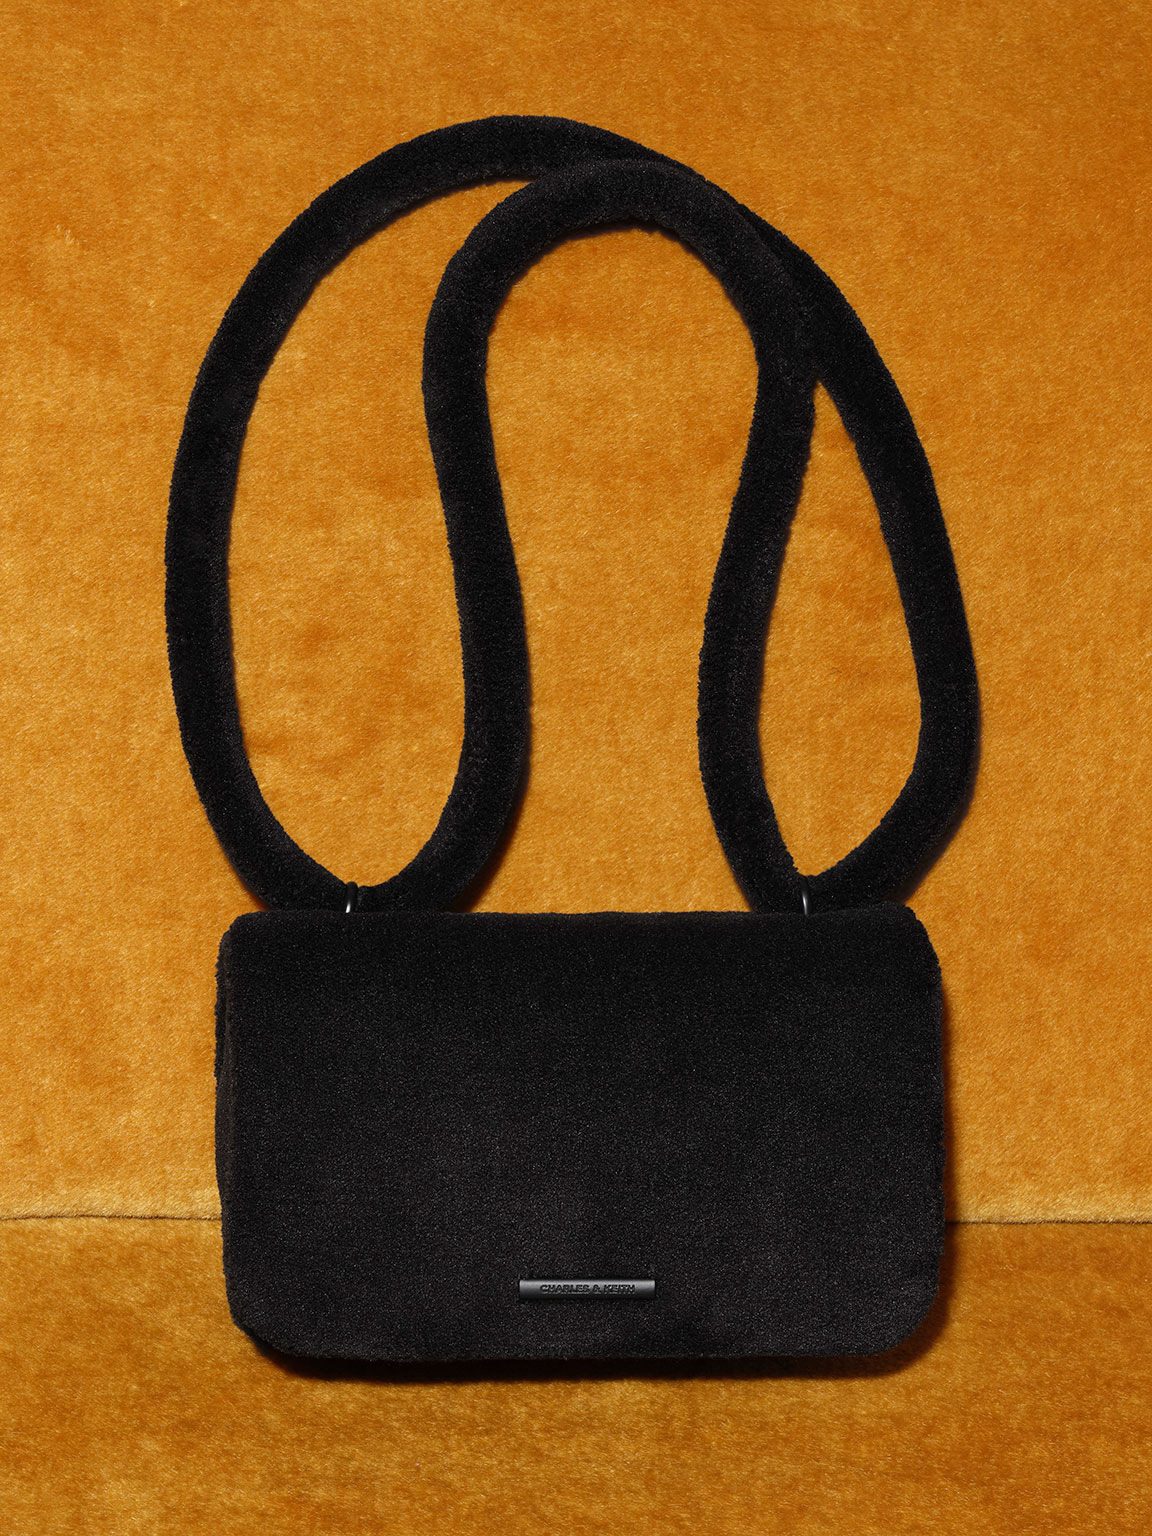 Hydroponic Unisex Adult Bg Cooler Bum Bag, 01-Black SP (Black), One Size :  Amazon.de: Sports & Outdoors